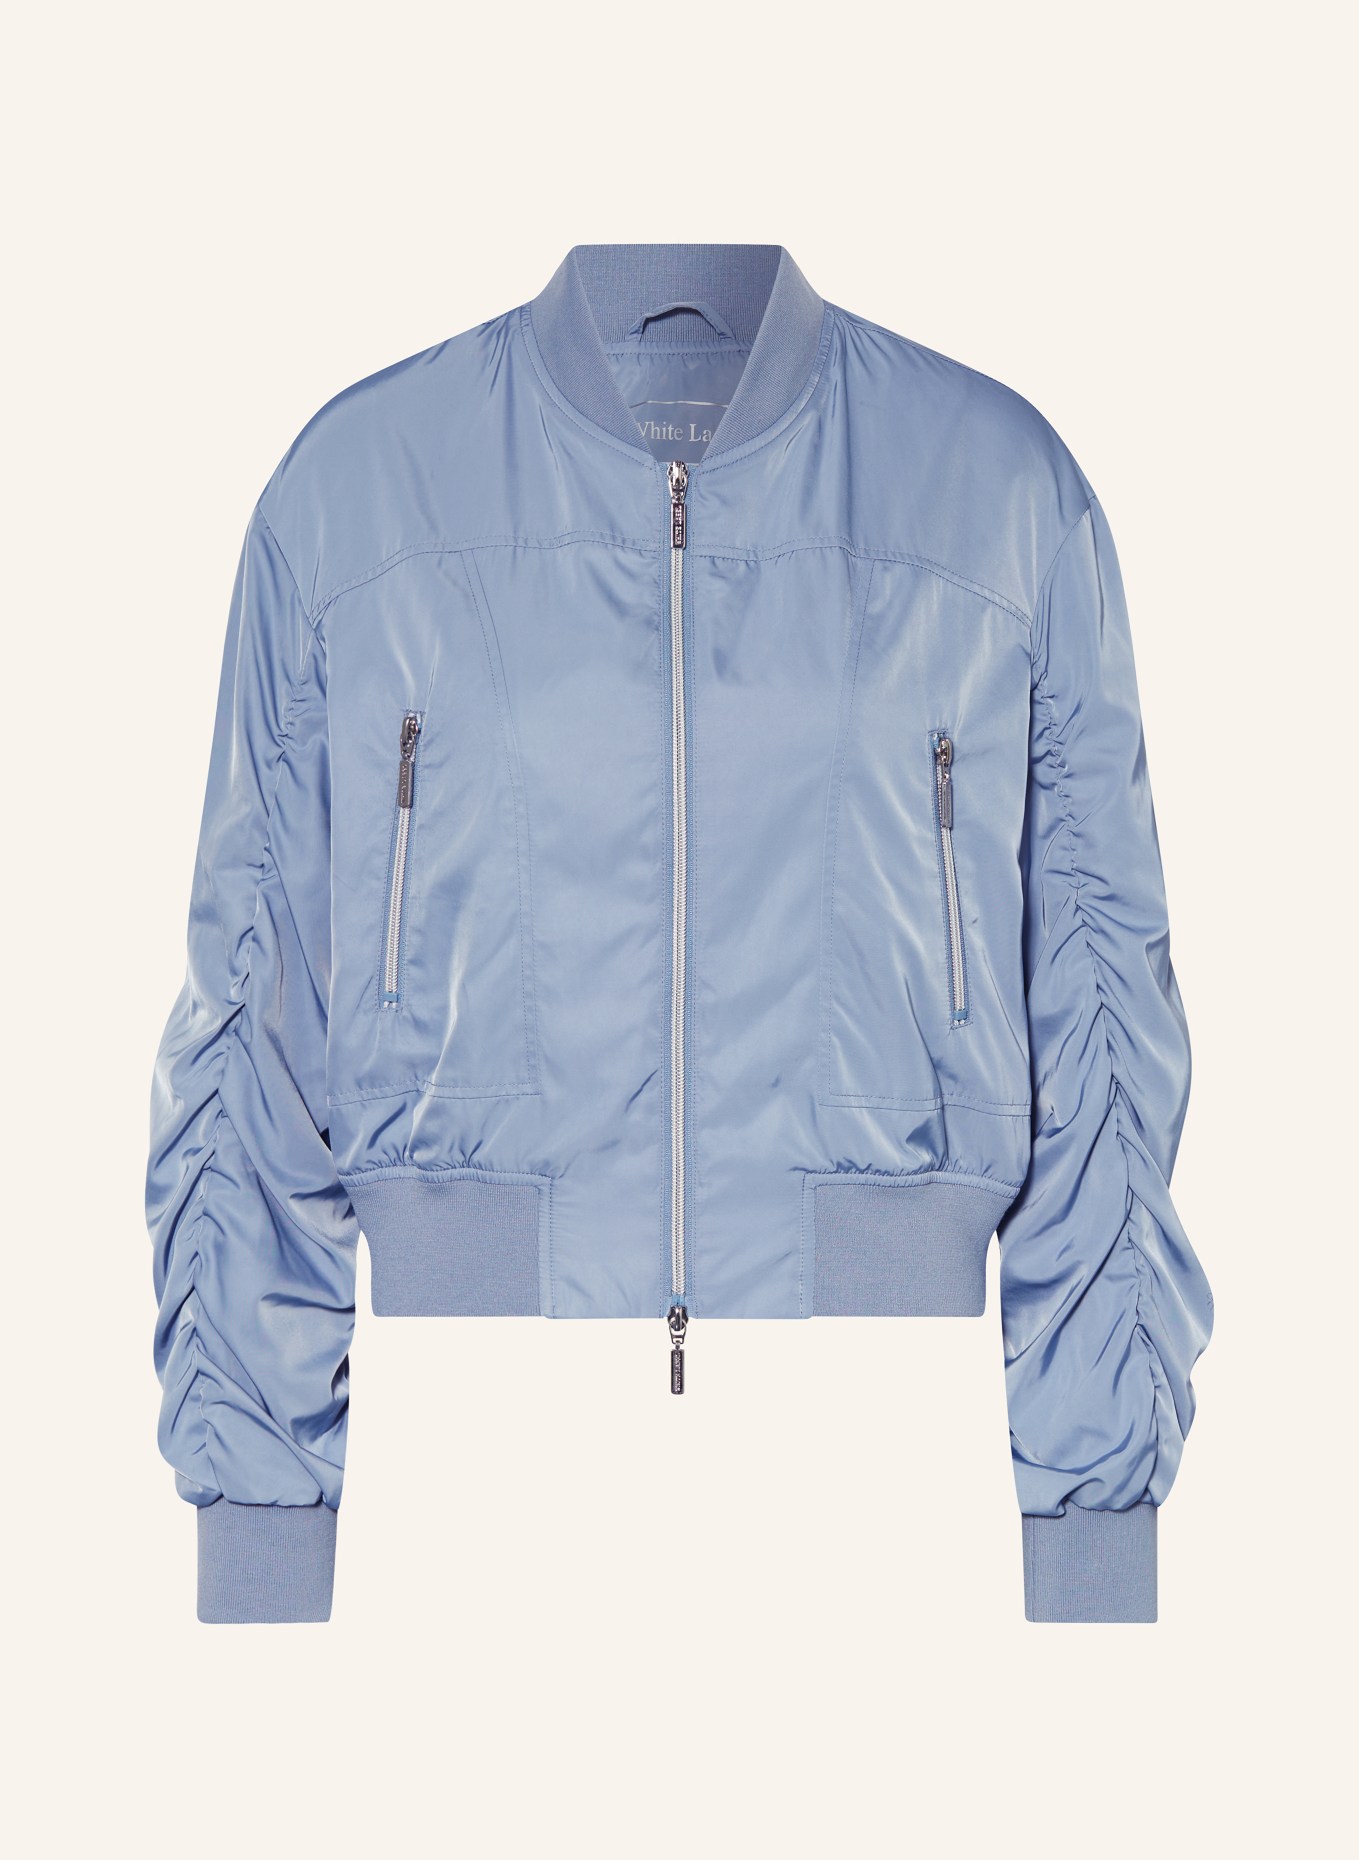 White Label Bomber jacket, Color: BLUE (Image 1)